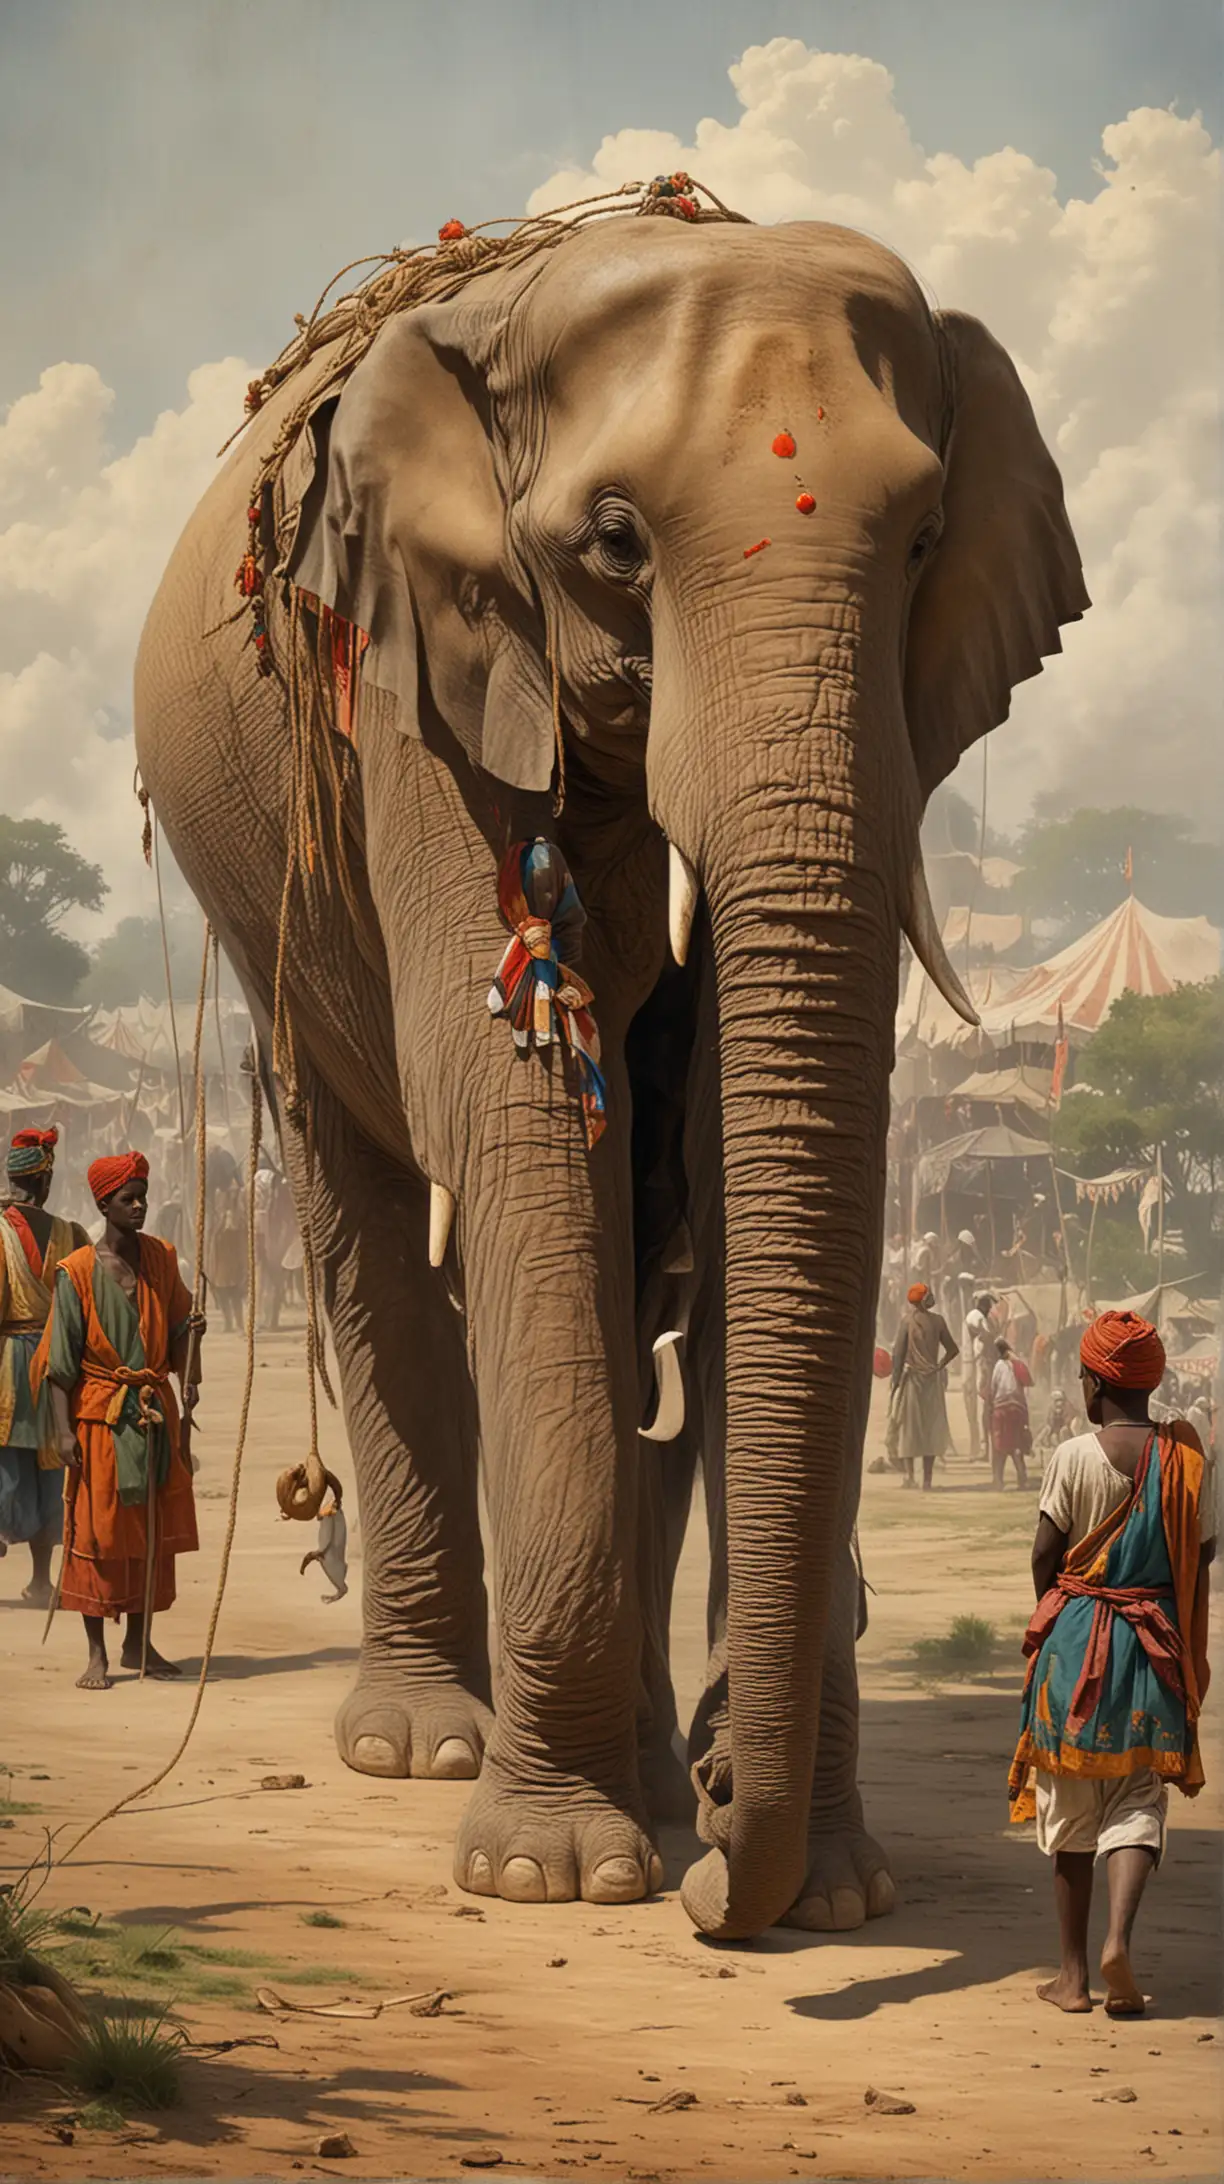 Мудрец задумался и пригласил юношу на прогулку. Они направились к цирку, где стоял огромный слон, привязанный тонкой веревкой к маленькому колышку.